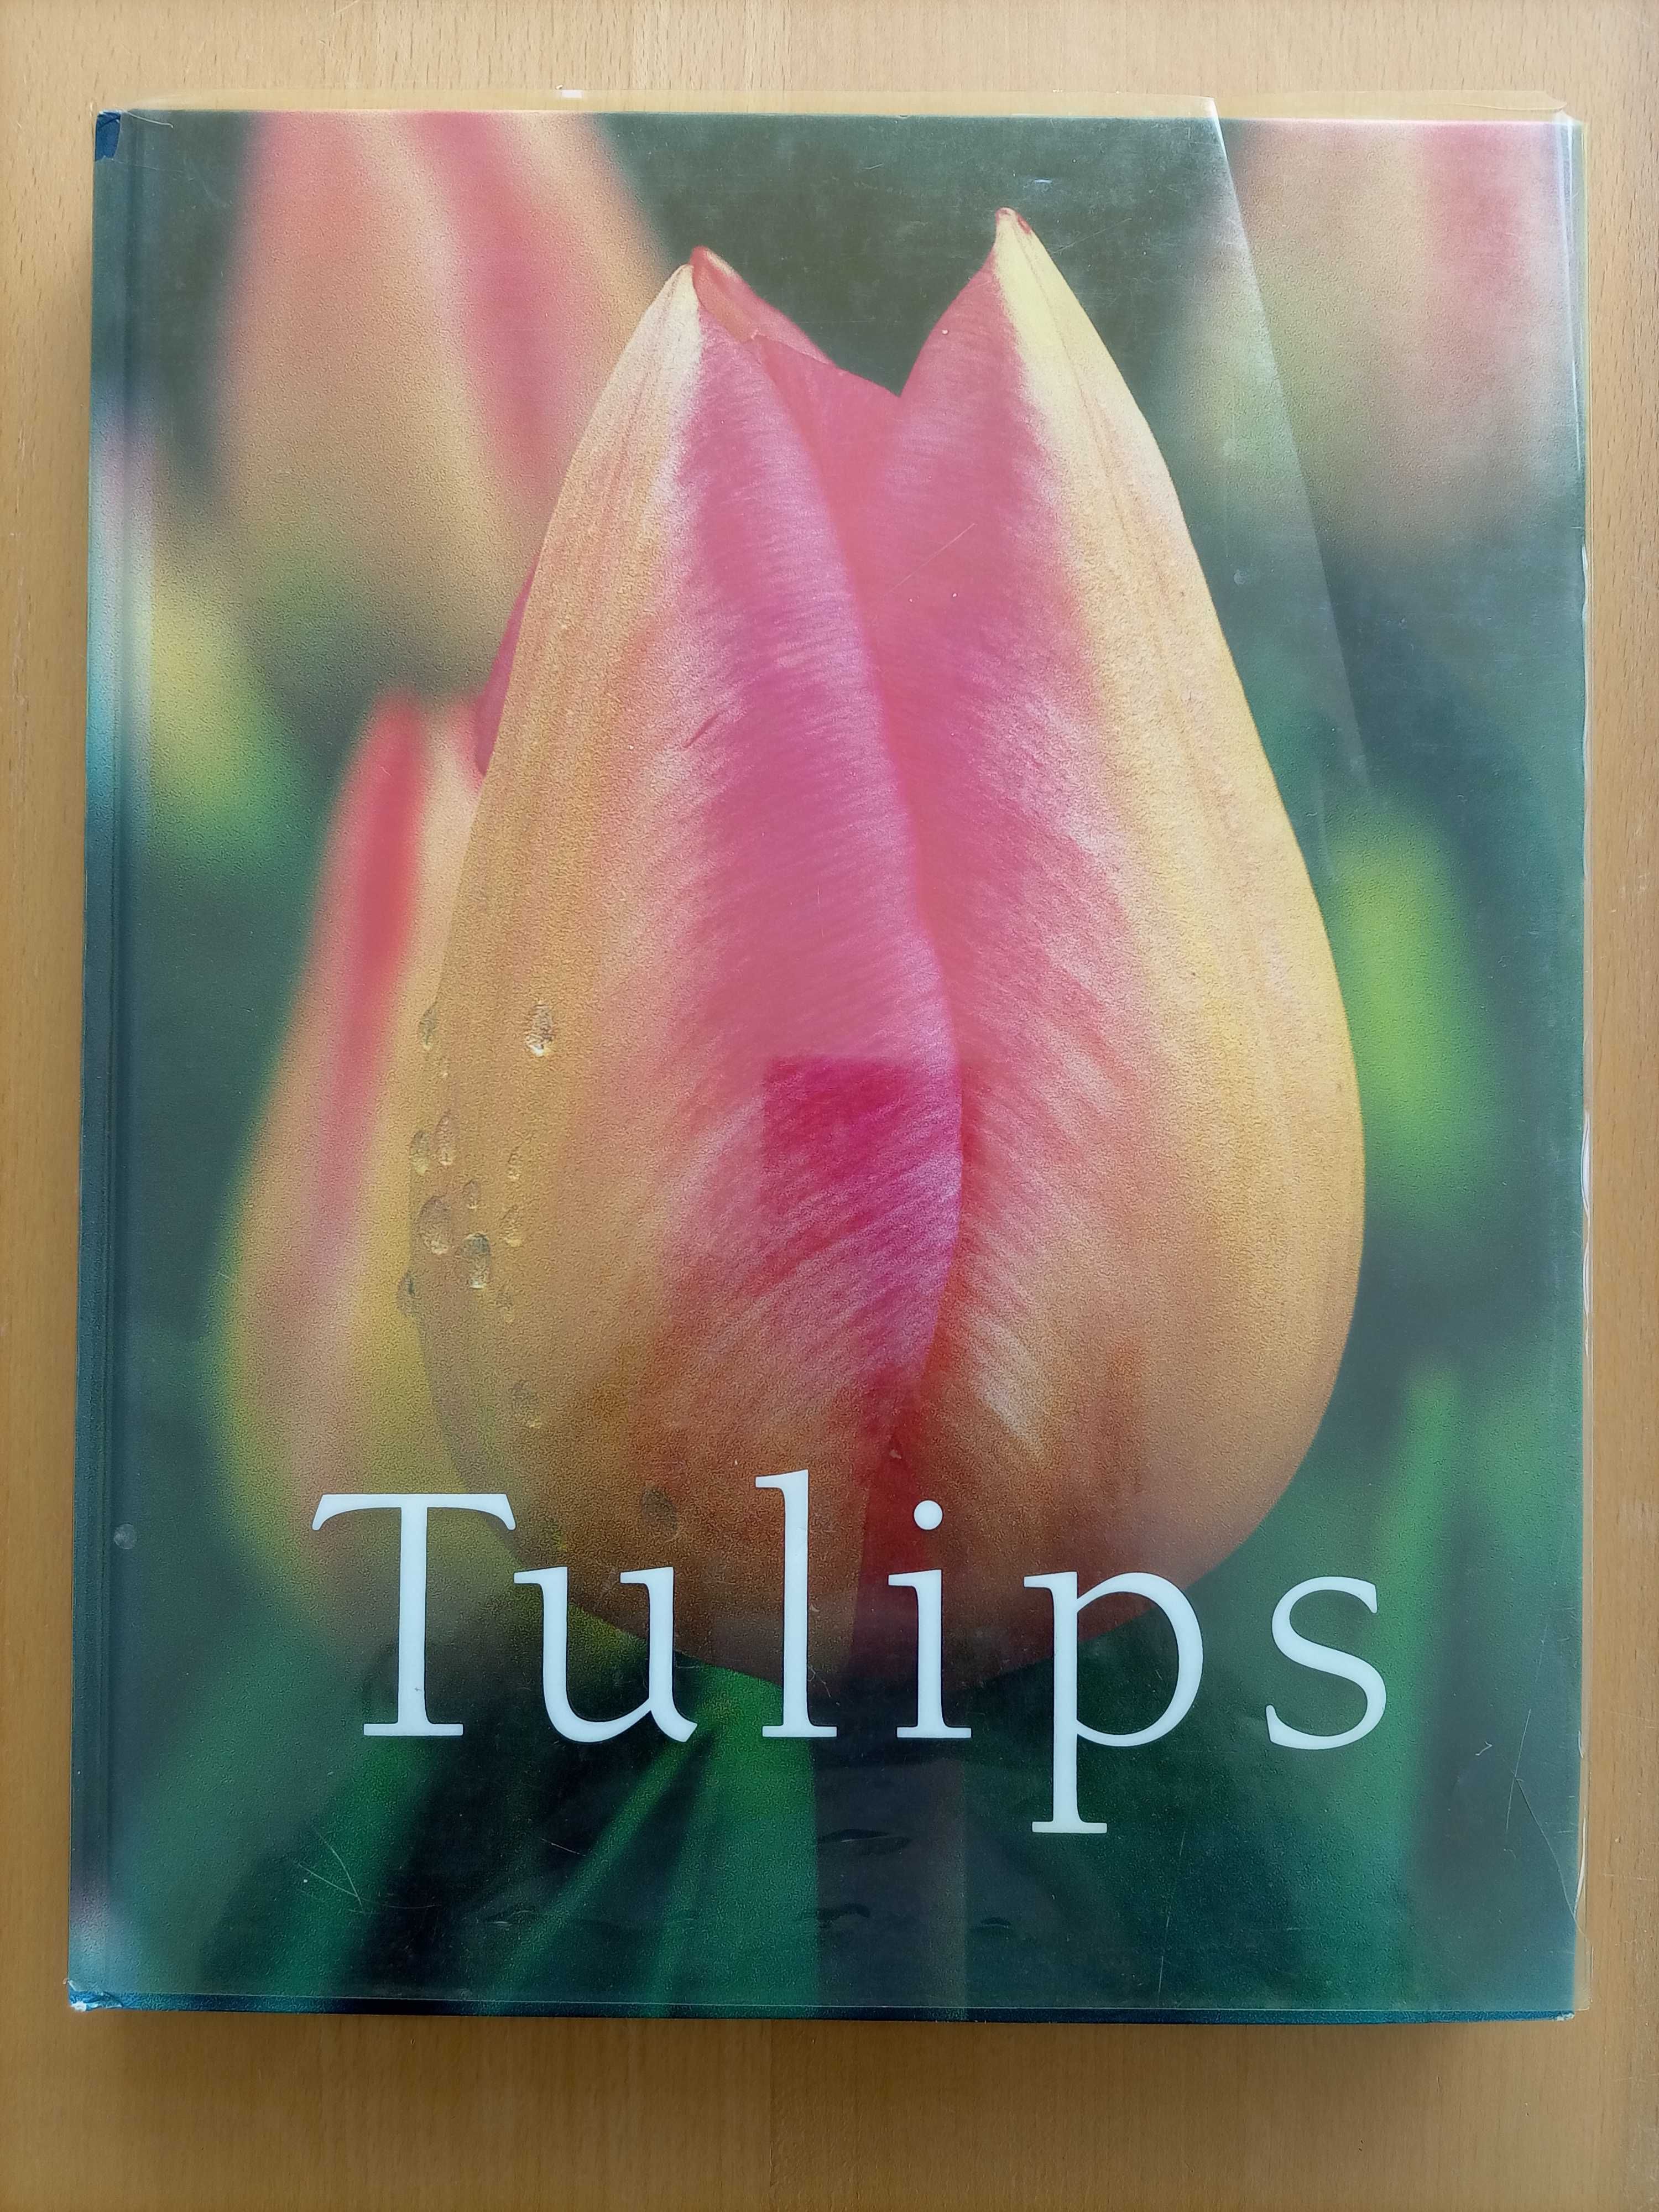 Livro "TULIPS" Coleção de fotos de Tulipas com citações em Inglês